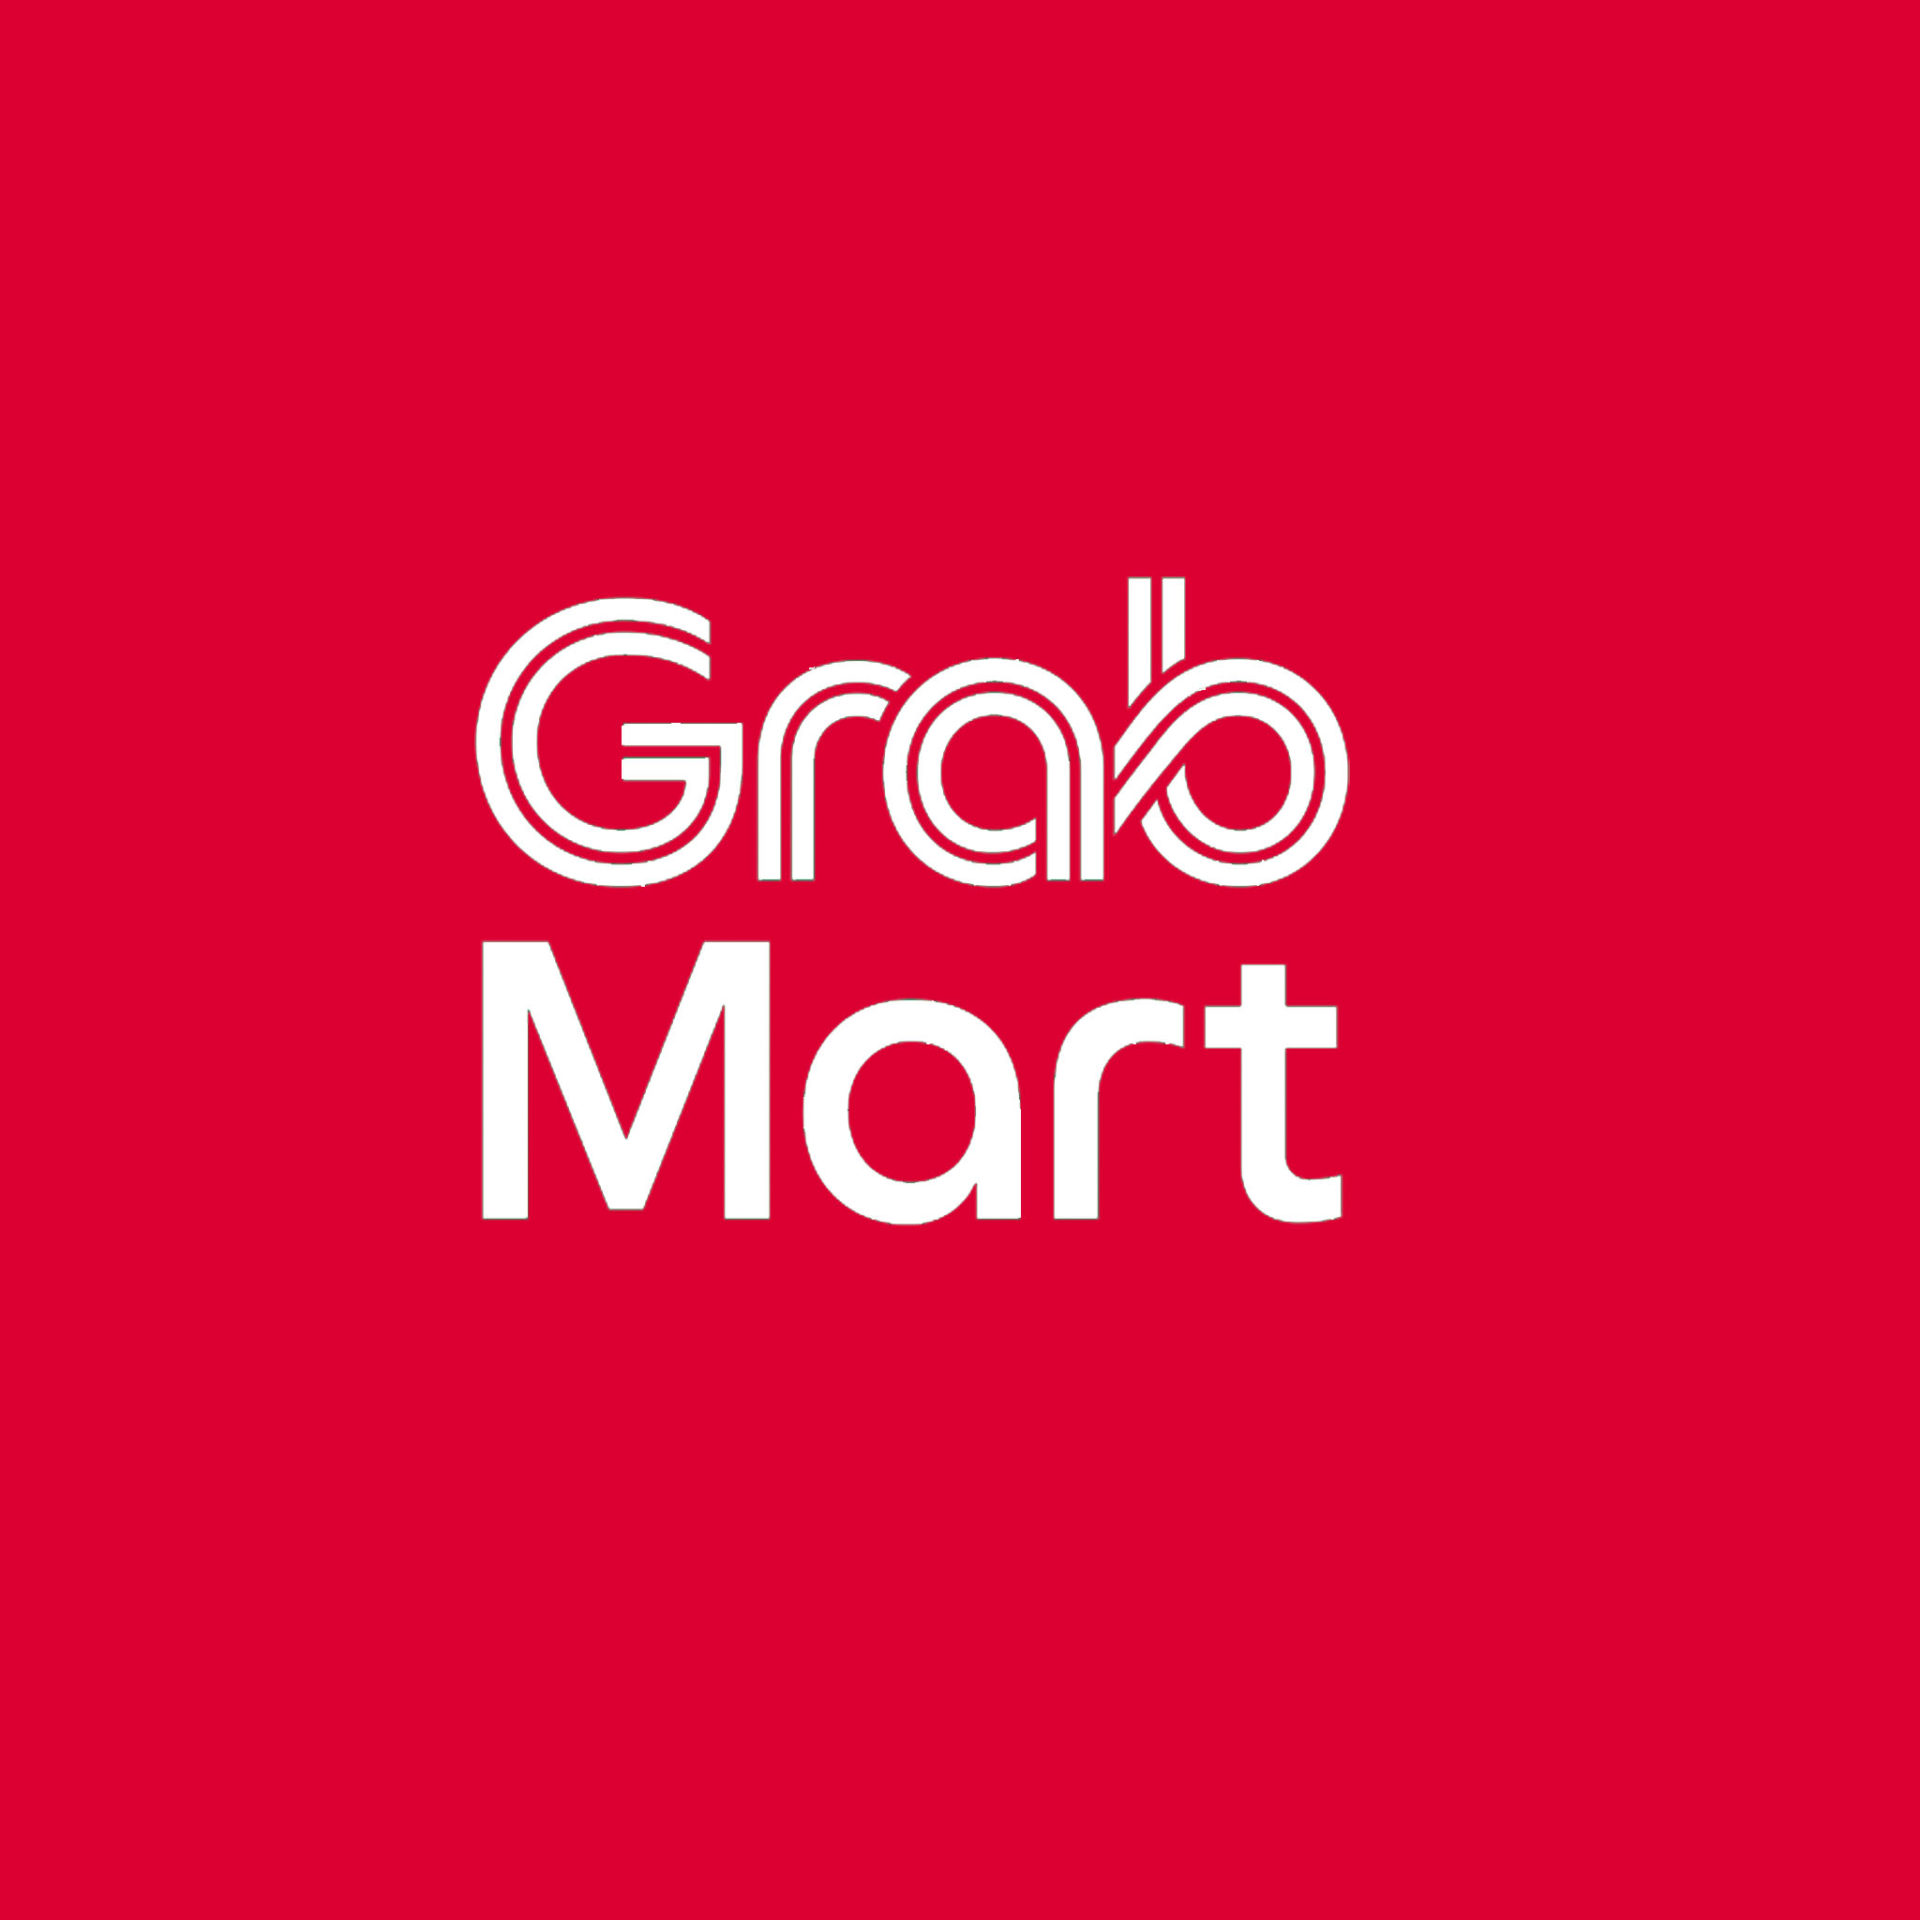 Grabmart